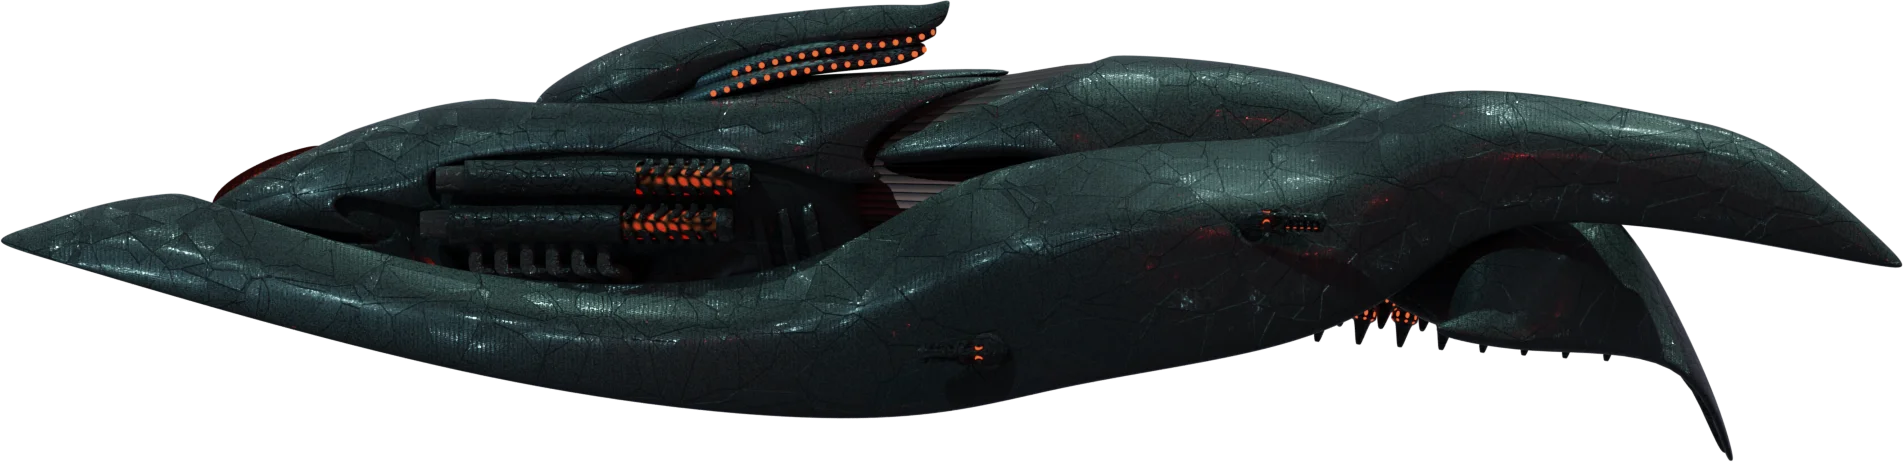 Эсминец класса "Ящер" - вид сбоку сложенный